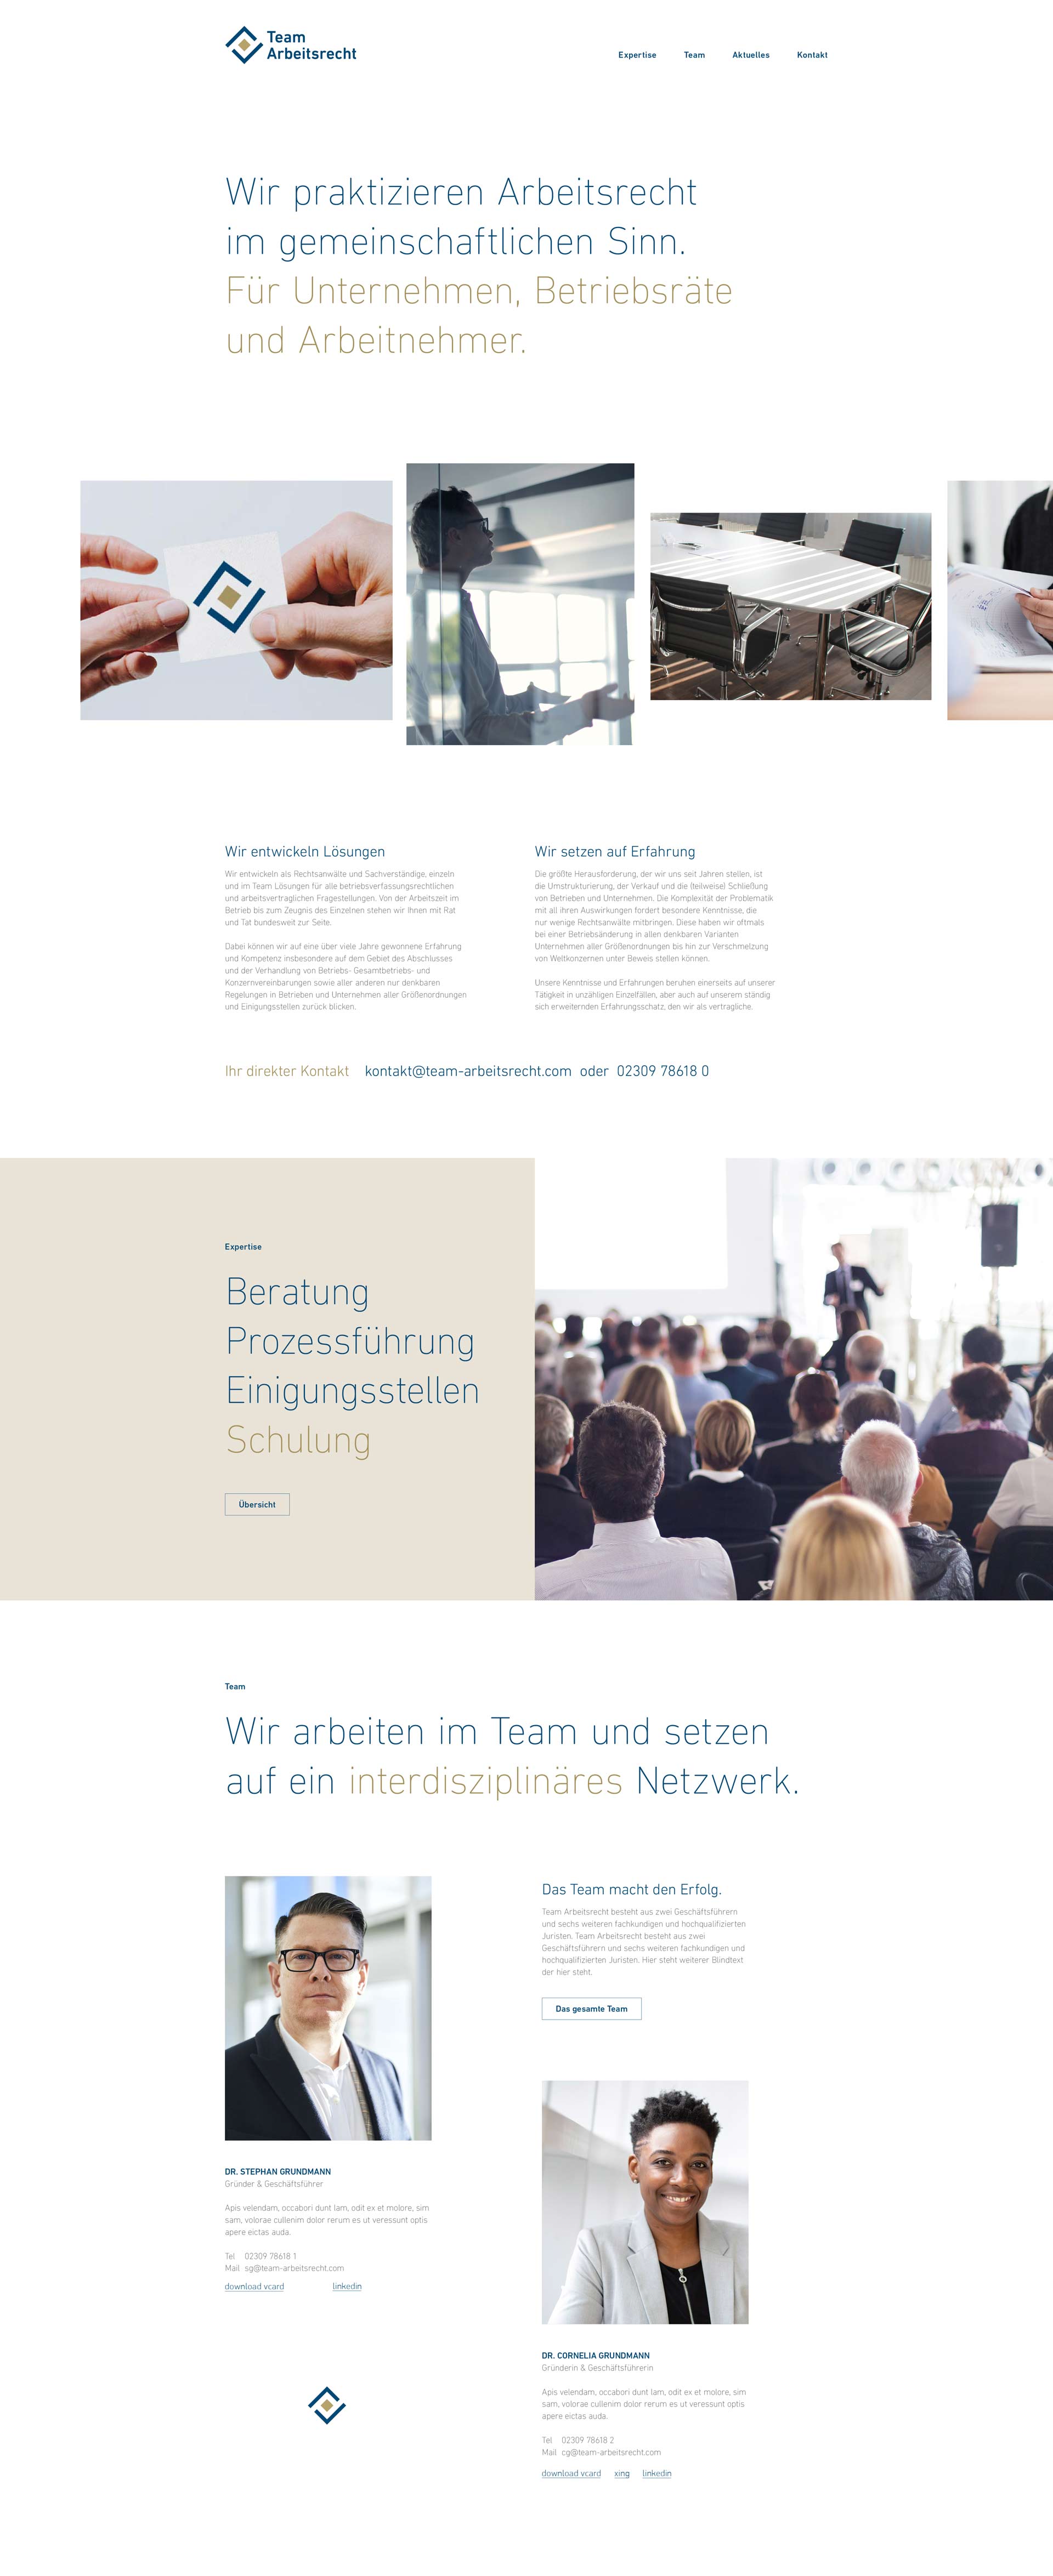 maxhartung.de team arbeitsrecht kanzlei ui design webdesign